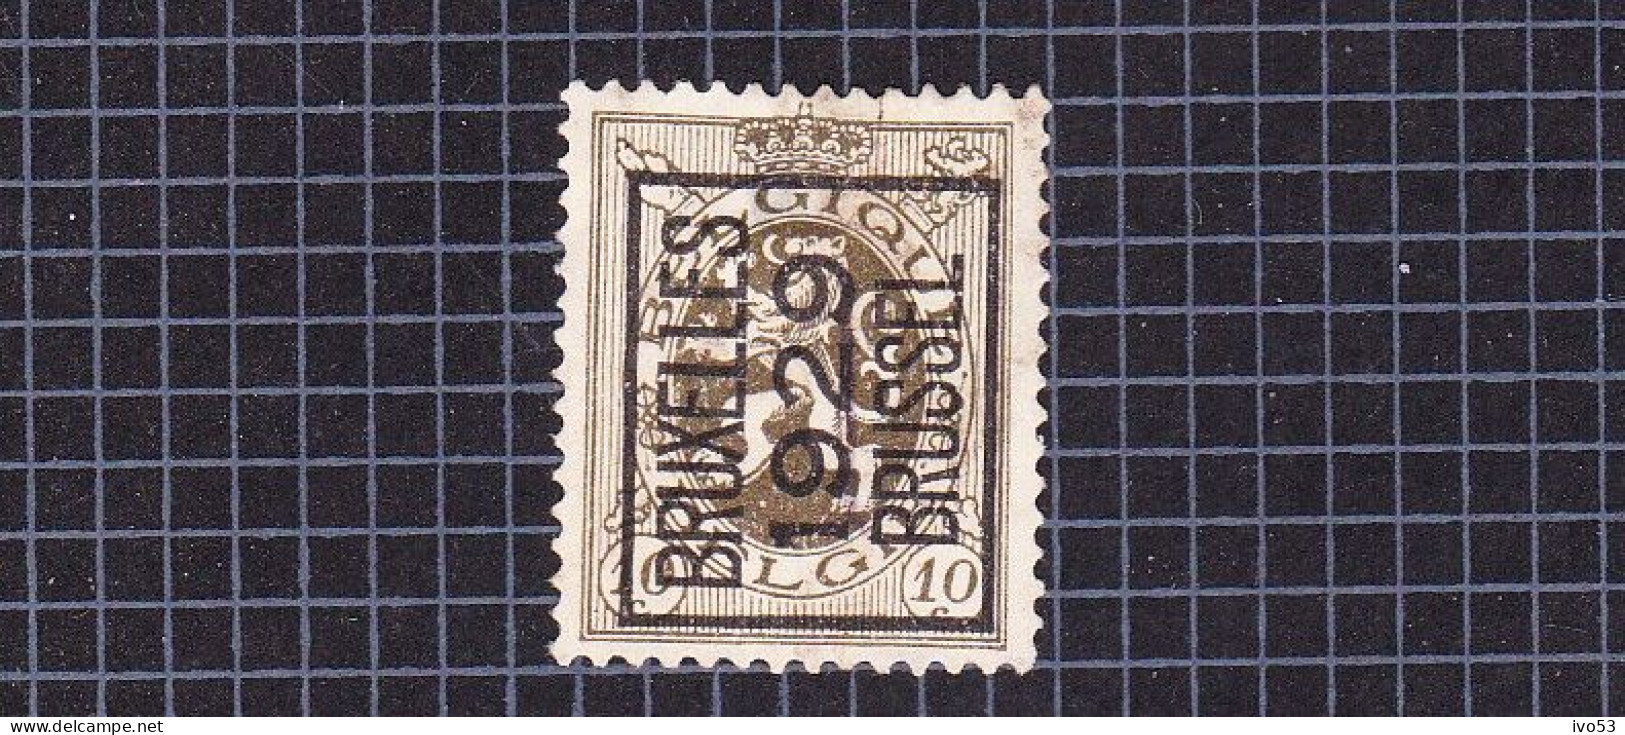 Heraldieke Leeuw:nr 280(*) Zonder Gom,voorafstempeling:Bruxelles 1929 Brussel. - Typos 1929-37 (Heraldischer Löwe)